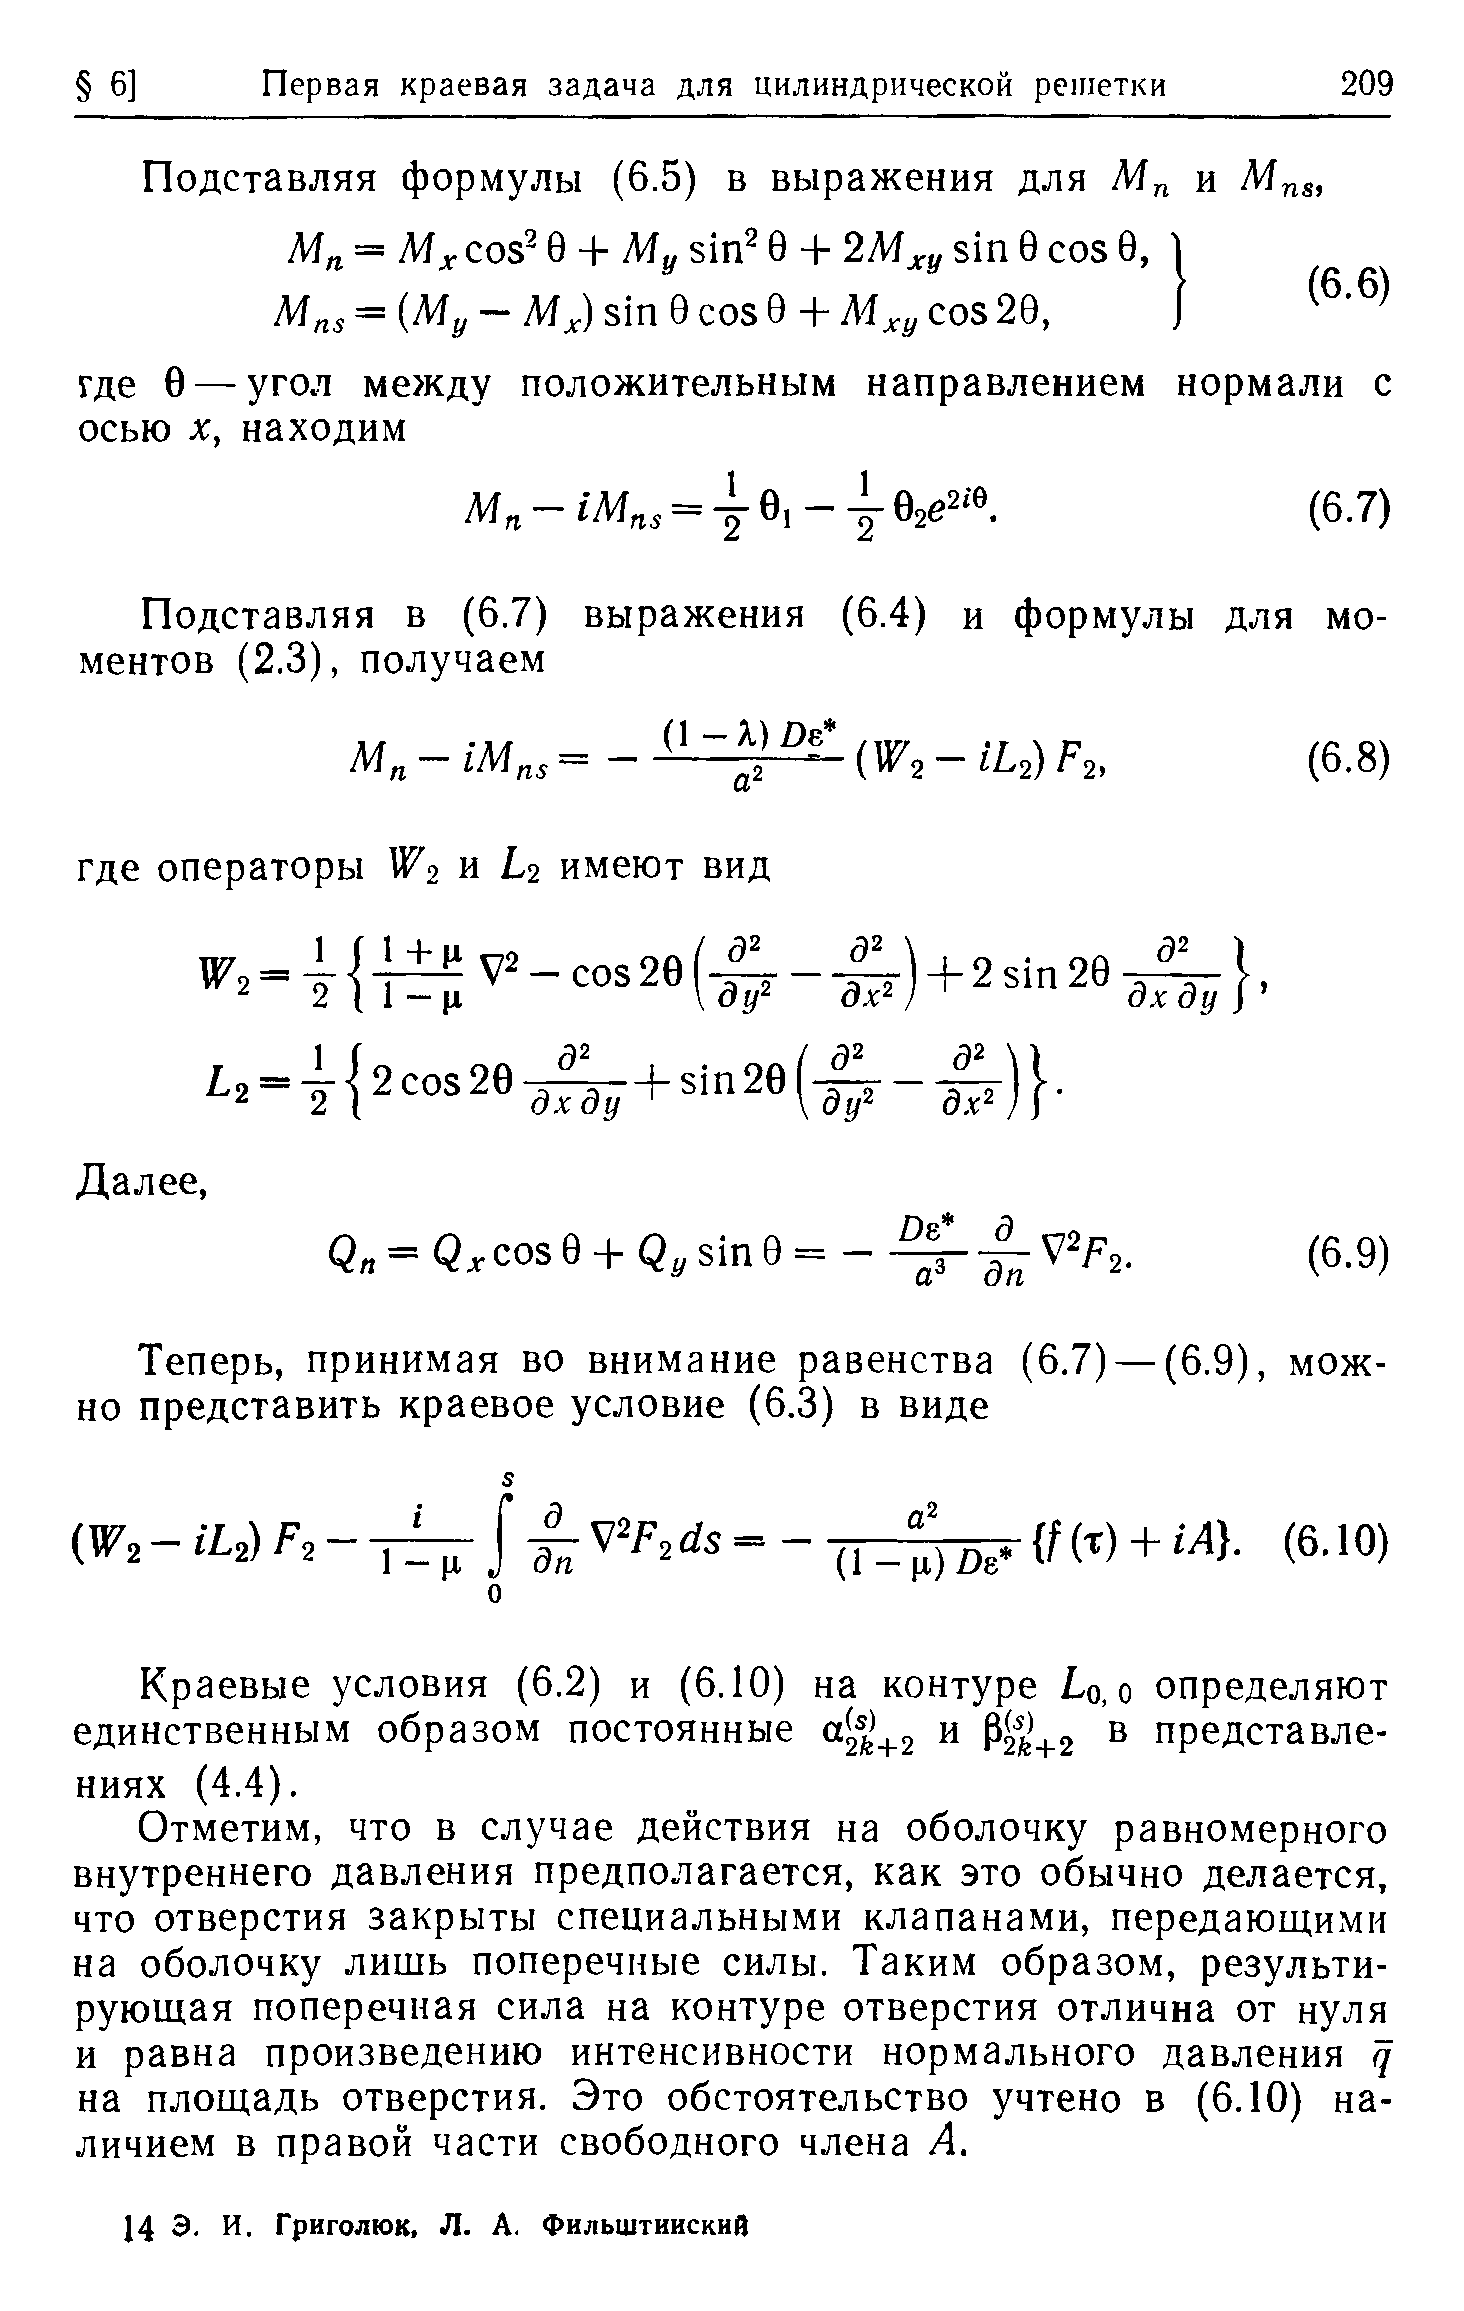 Краевые условия (6.2) и (6.10) на контуре 1о, о определяют единственным образом постоянные зй-ьг и Ргь+г представлениях (4.4).
